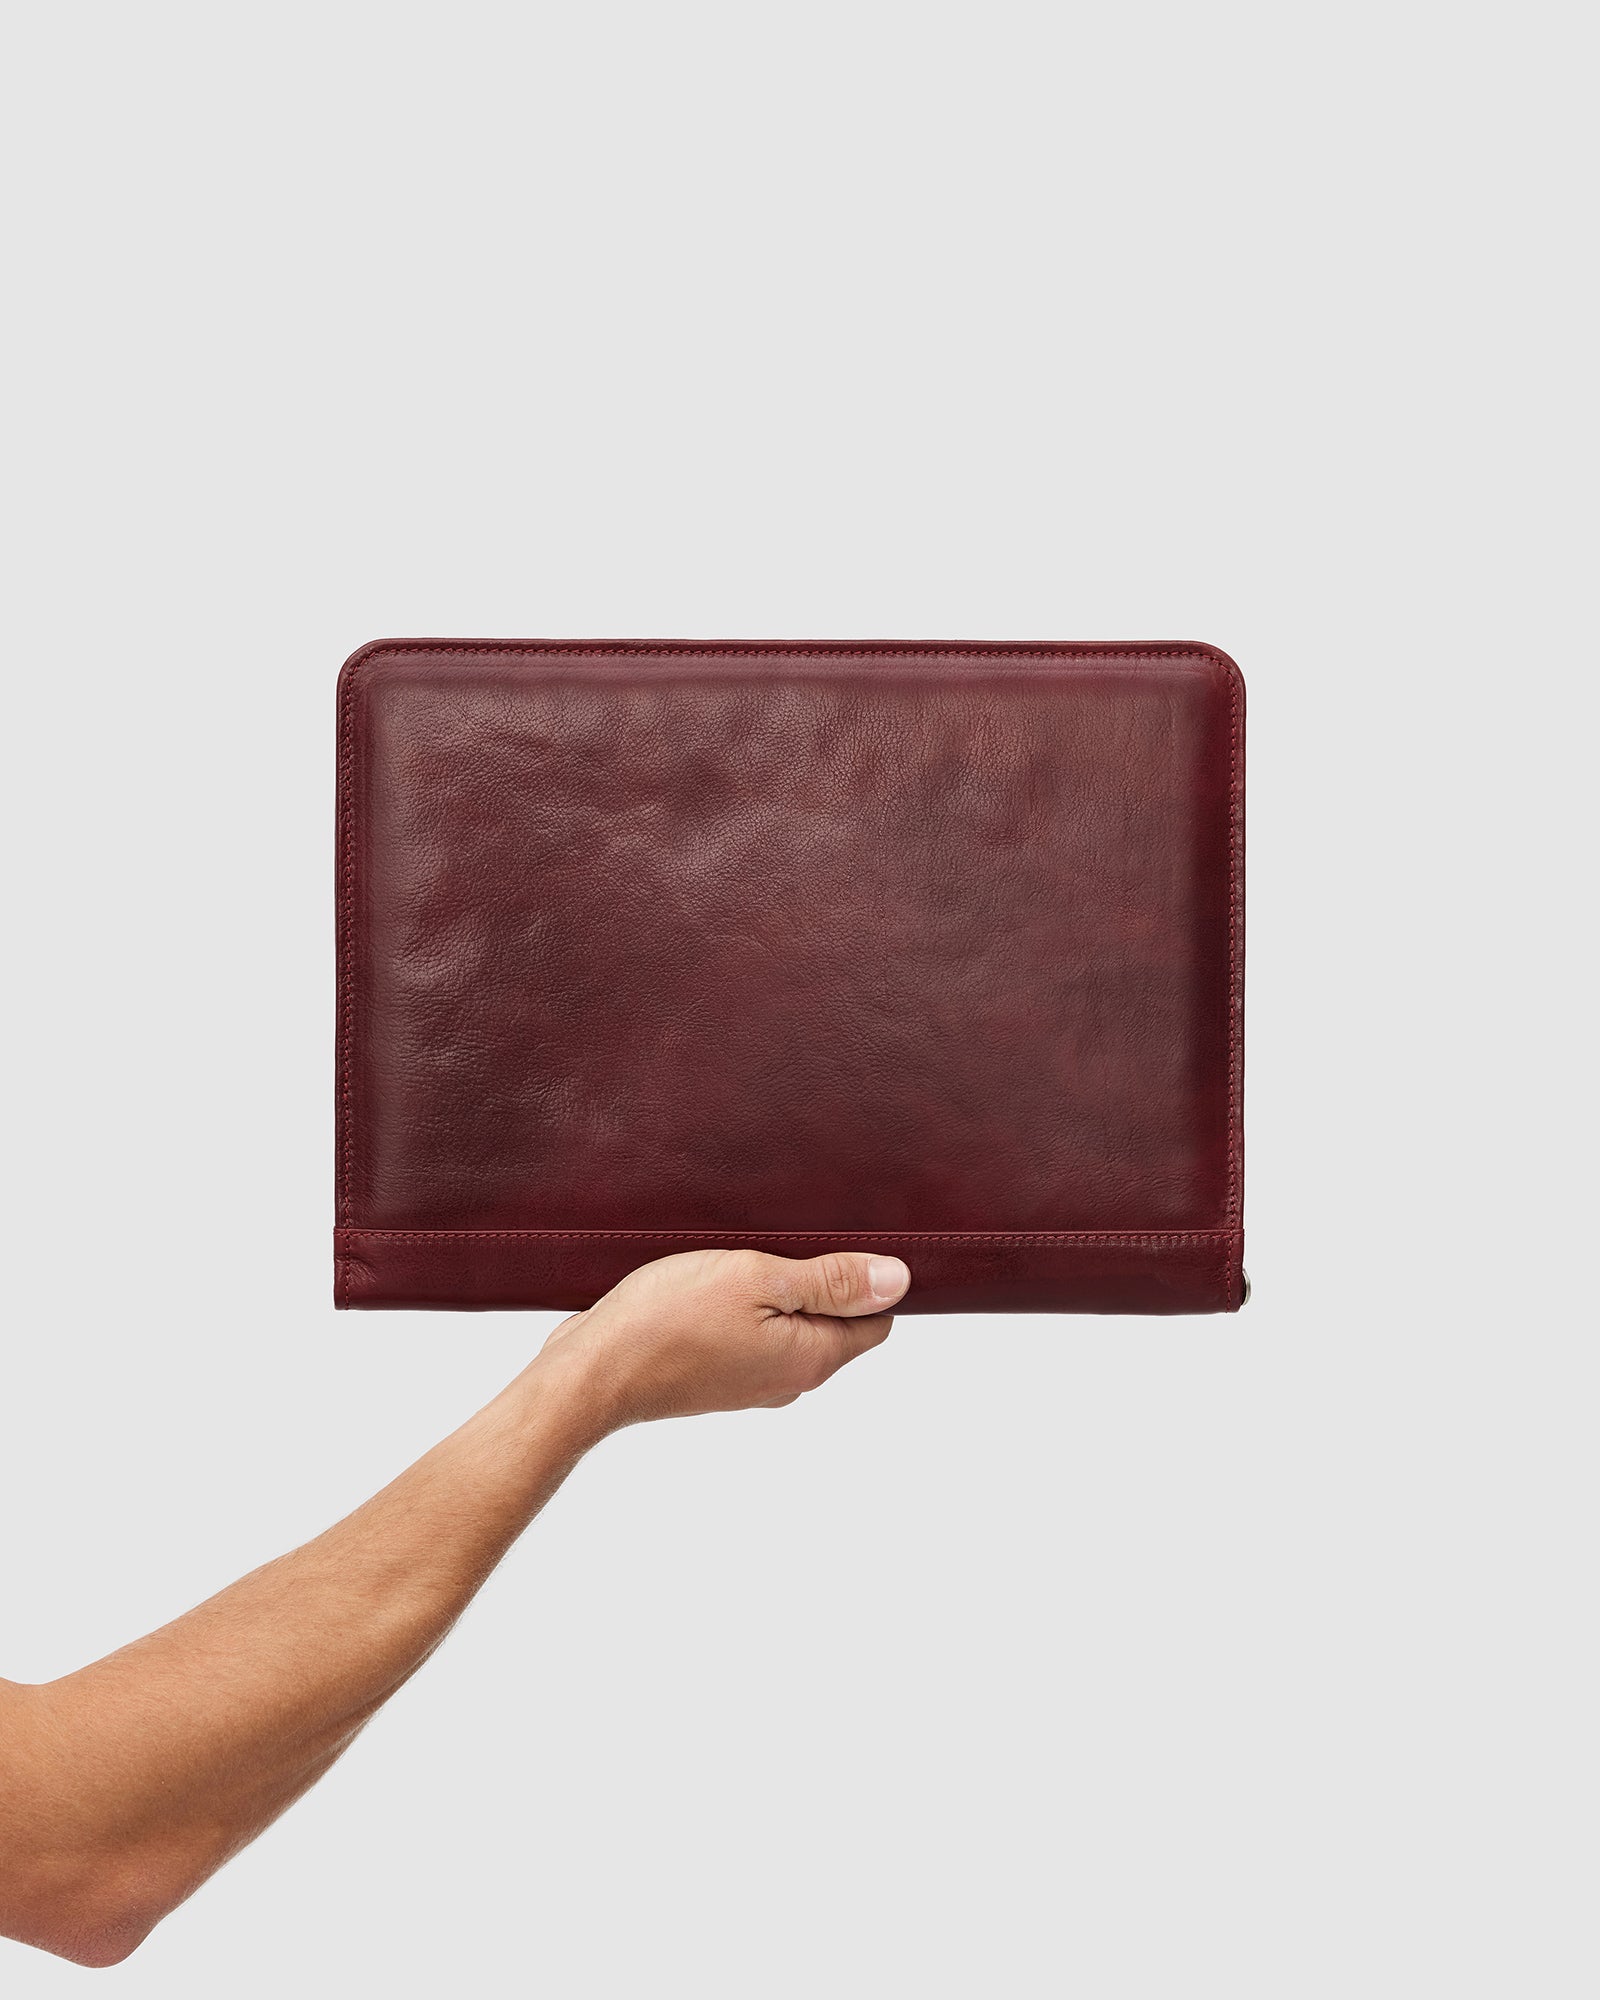 Folio Red - Slim Leather Compendium